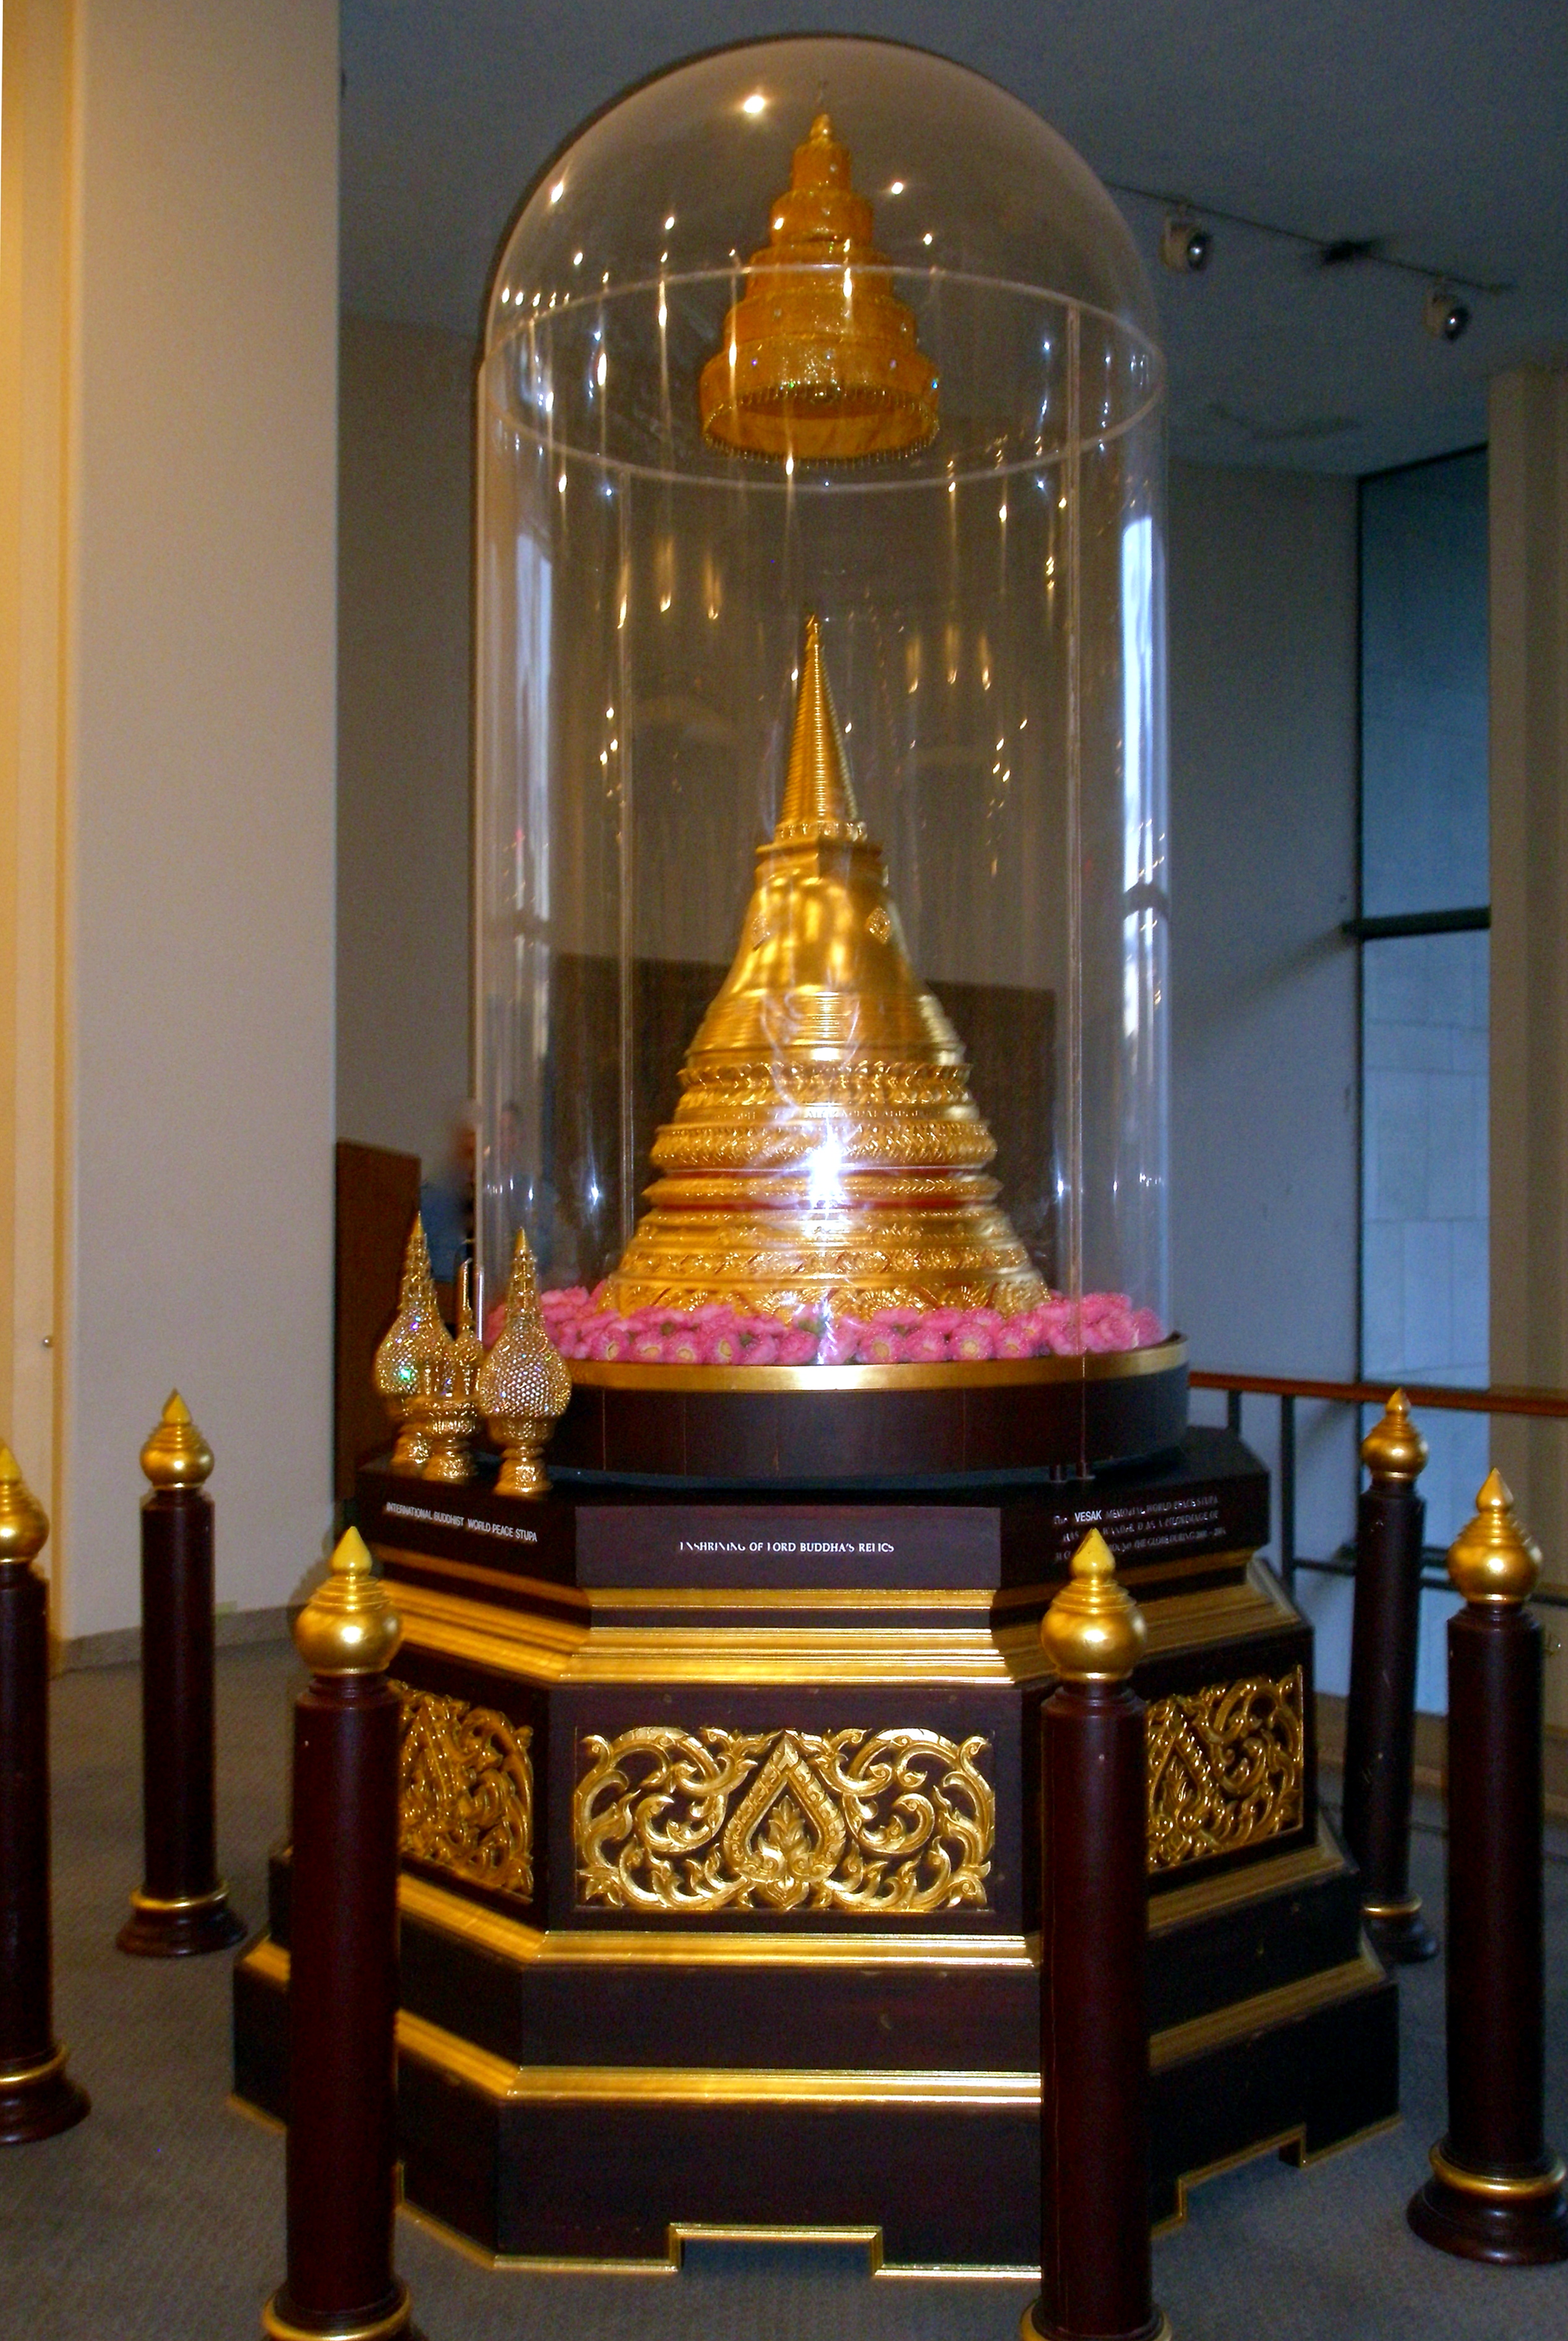 Estupa budista conmemorativa para el reconocimiento internacional del Dí, UNNY261G, 2006, Tailandia 